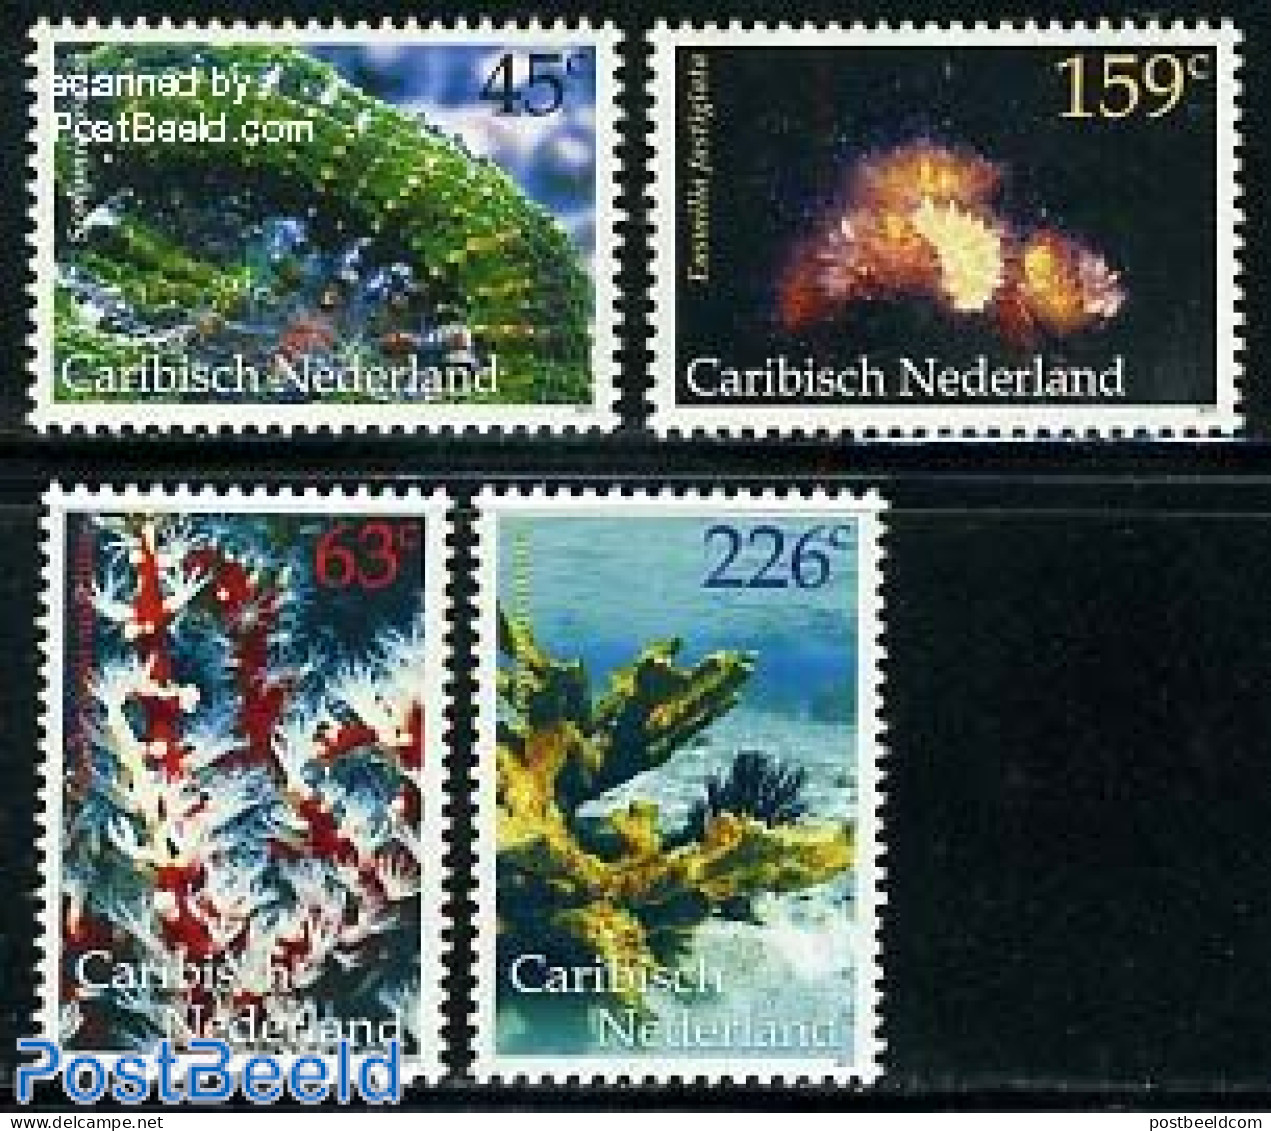 Dutch Caribbean 2011 Corals 4v, Mint NH, Nature - Shells & Crustaceans - Marine Life